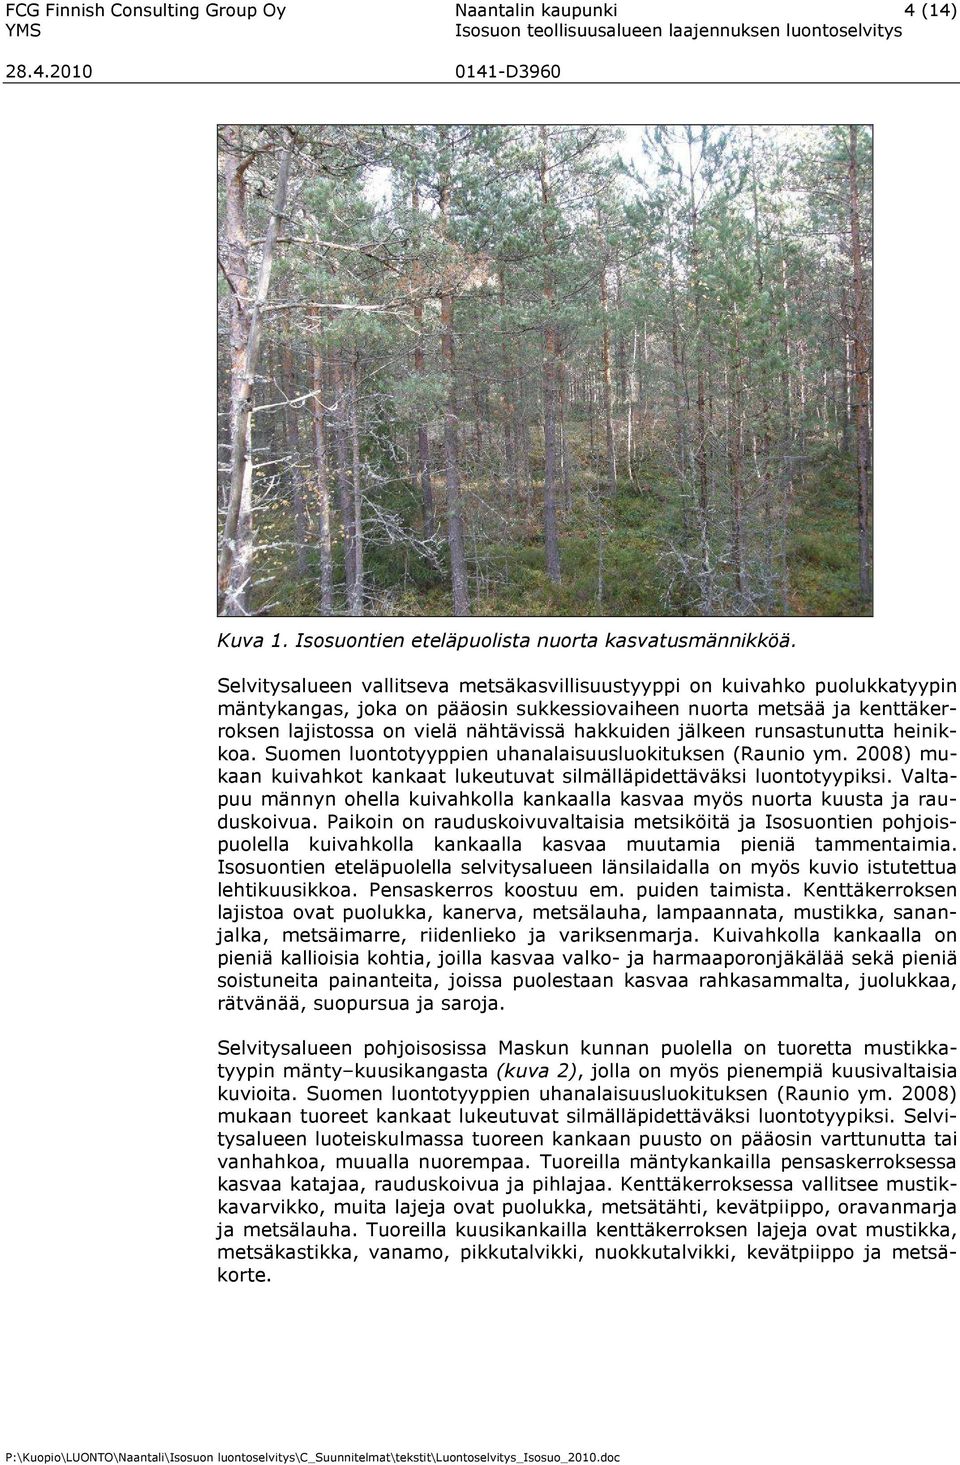 jälkeen runsastunutta heinikkoa. Suomen luontotyyppien uhanalaisuusluokituksen (Raunio ym. 2008) mukaan kuivahkot kankaat lukeutuvat silmälläpidettäväksi luontotyypiksi.